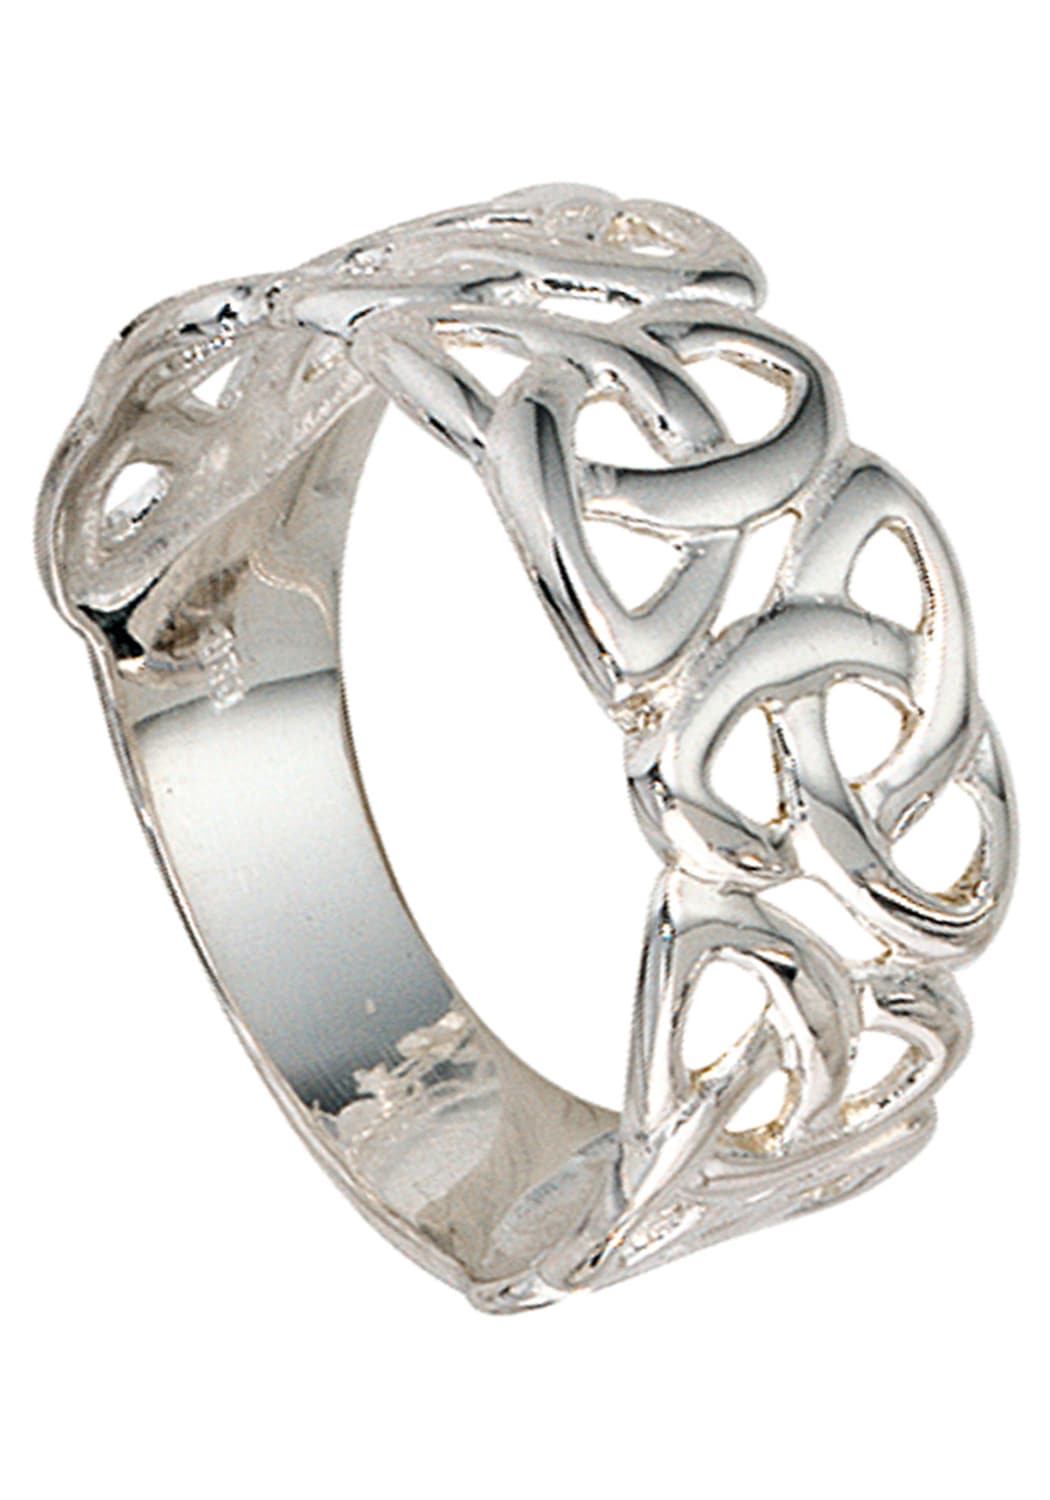 JOBO Silberring »Ring breit« 925 Silber rhodiniert